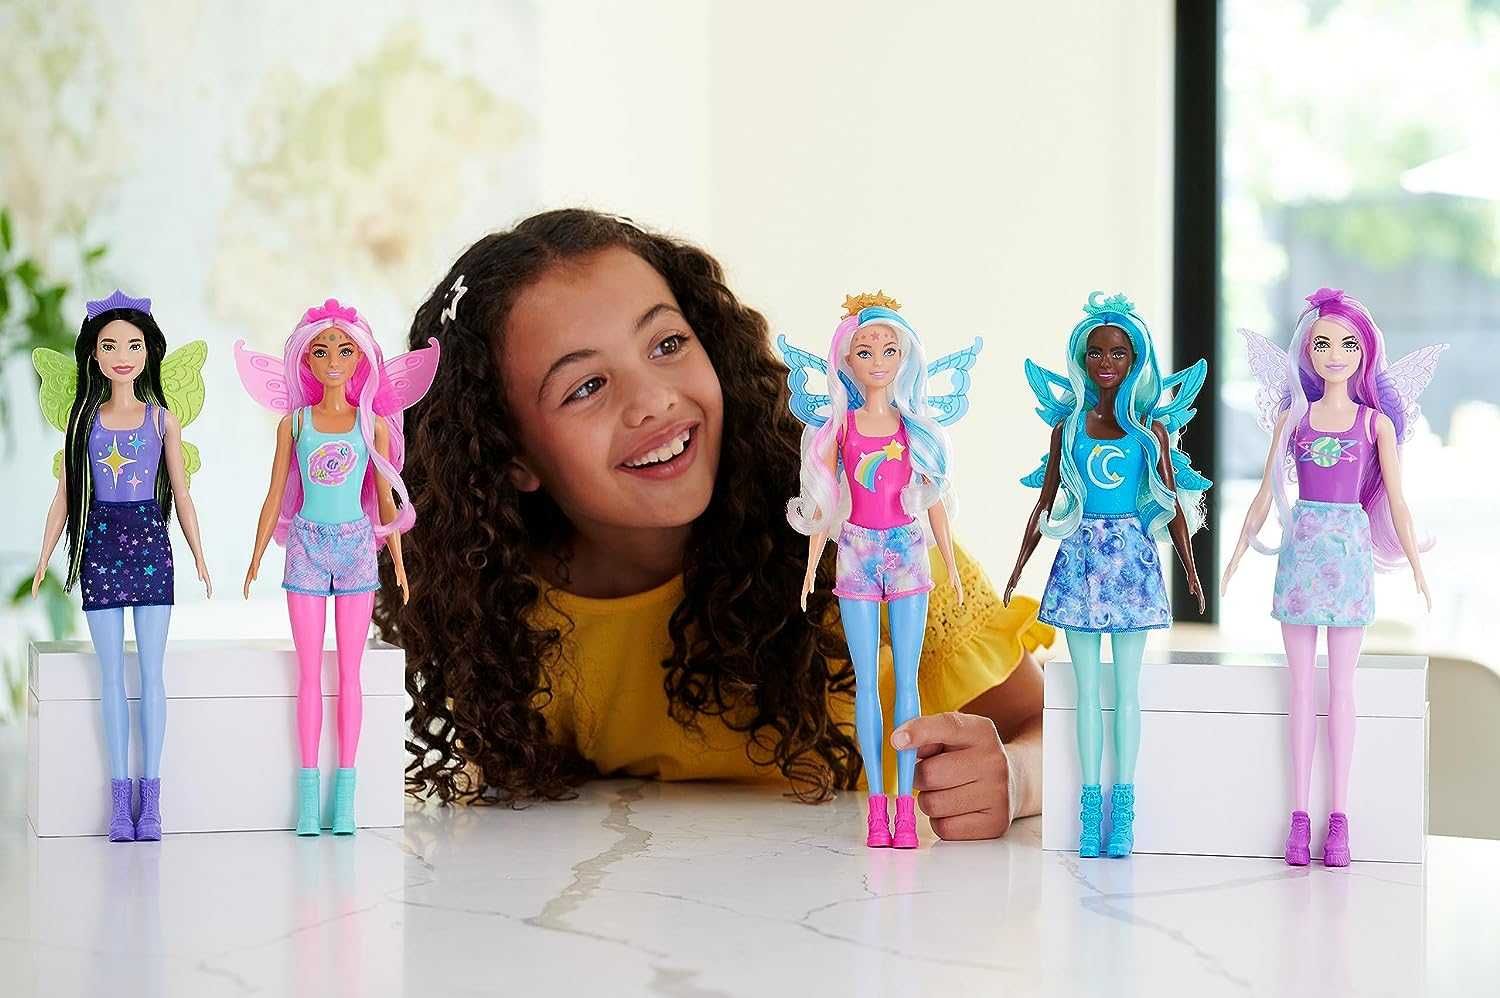 Барби Фея Галактическая красота Barbie Color Reveal Rainbow Galaxy